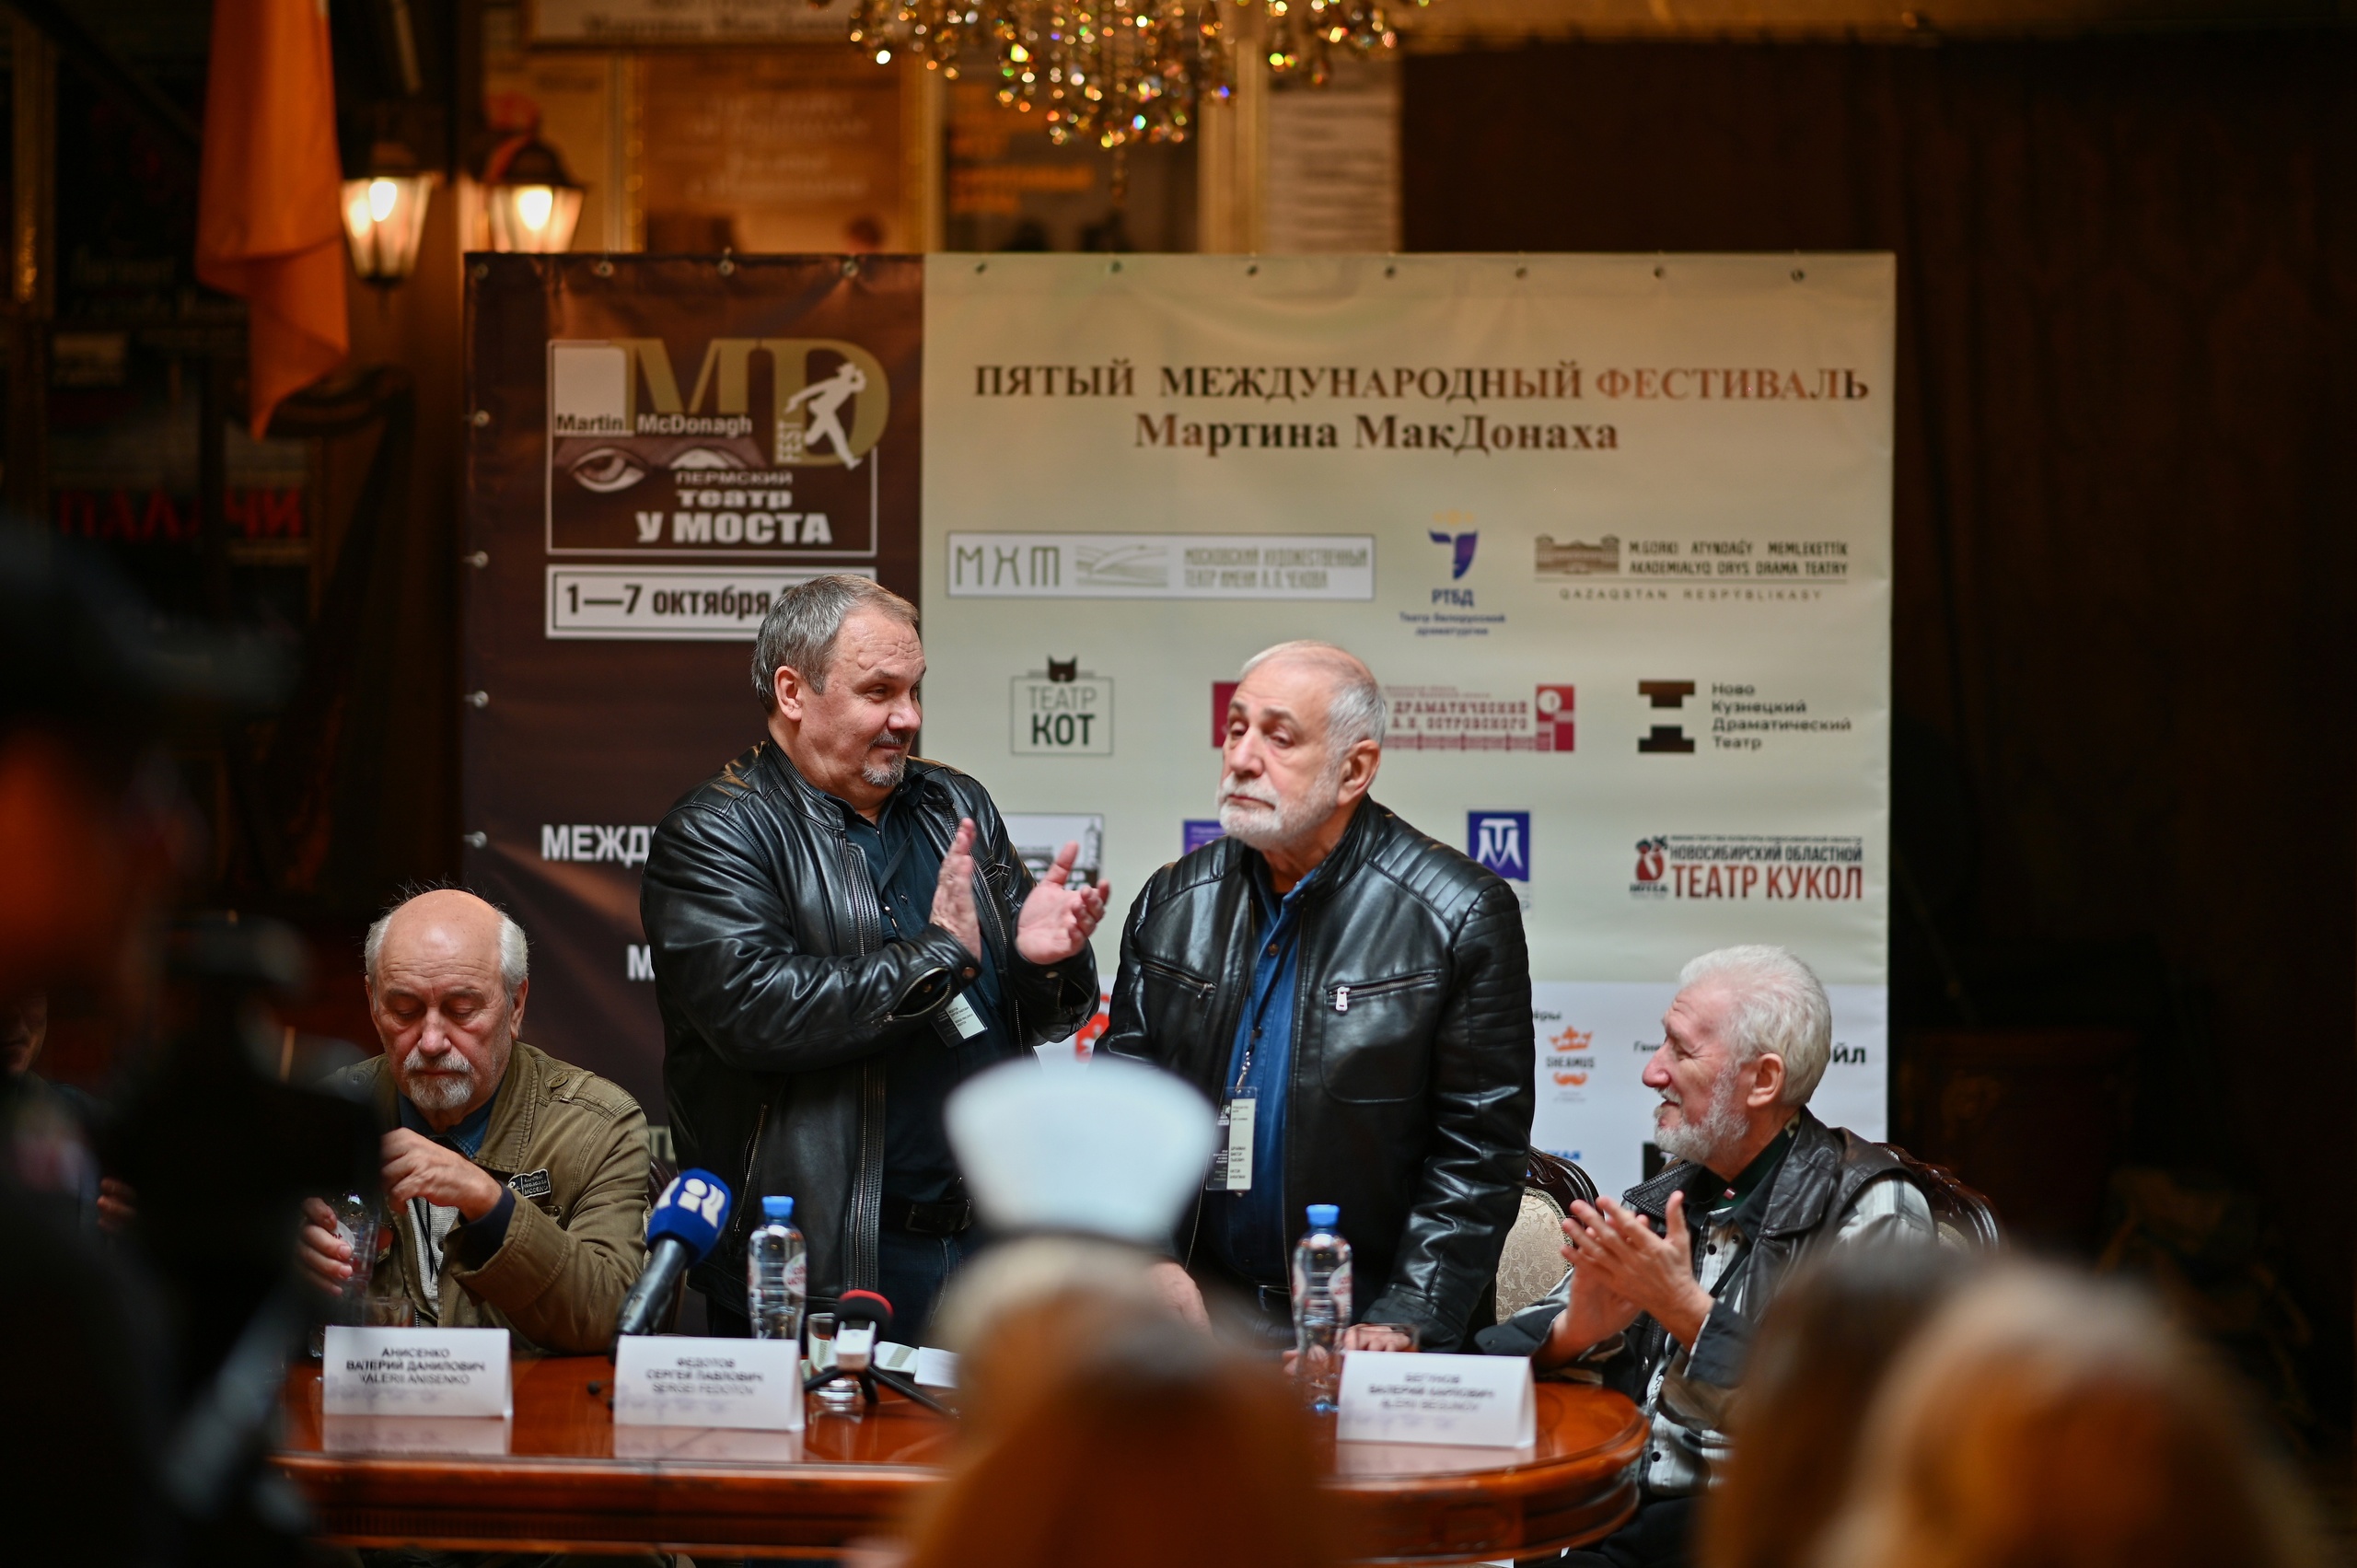 В Перми стартовал Международный фестиваль Мартина МакДонаха